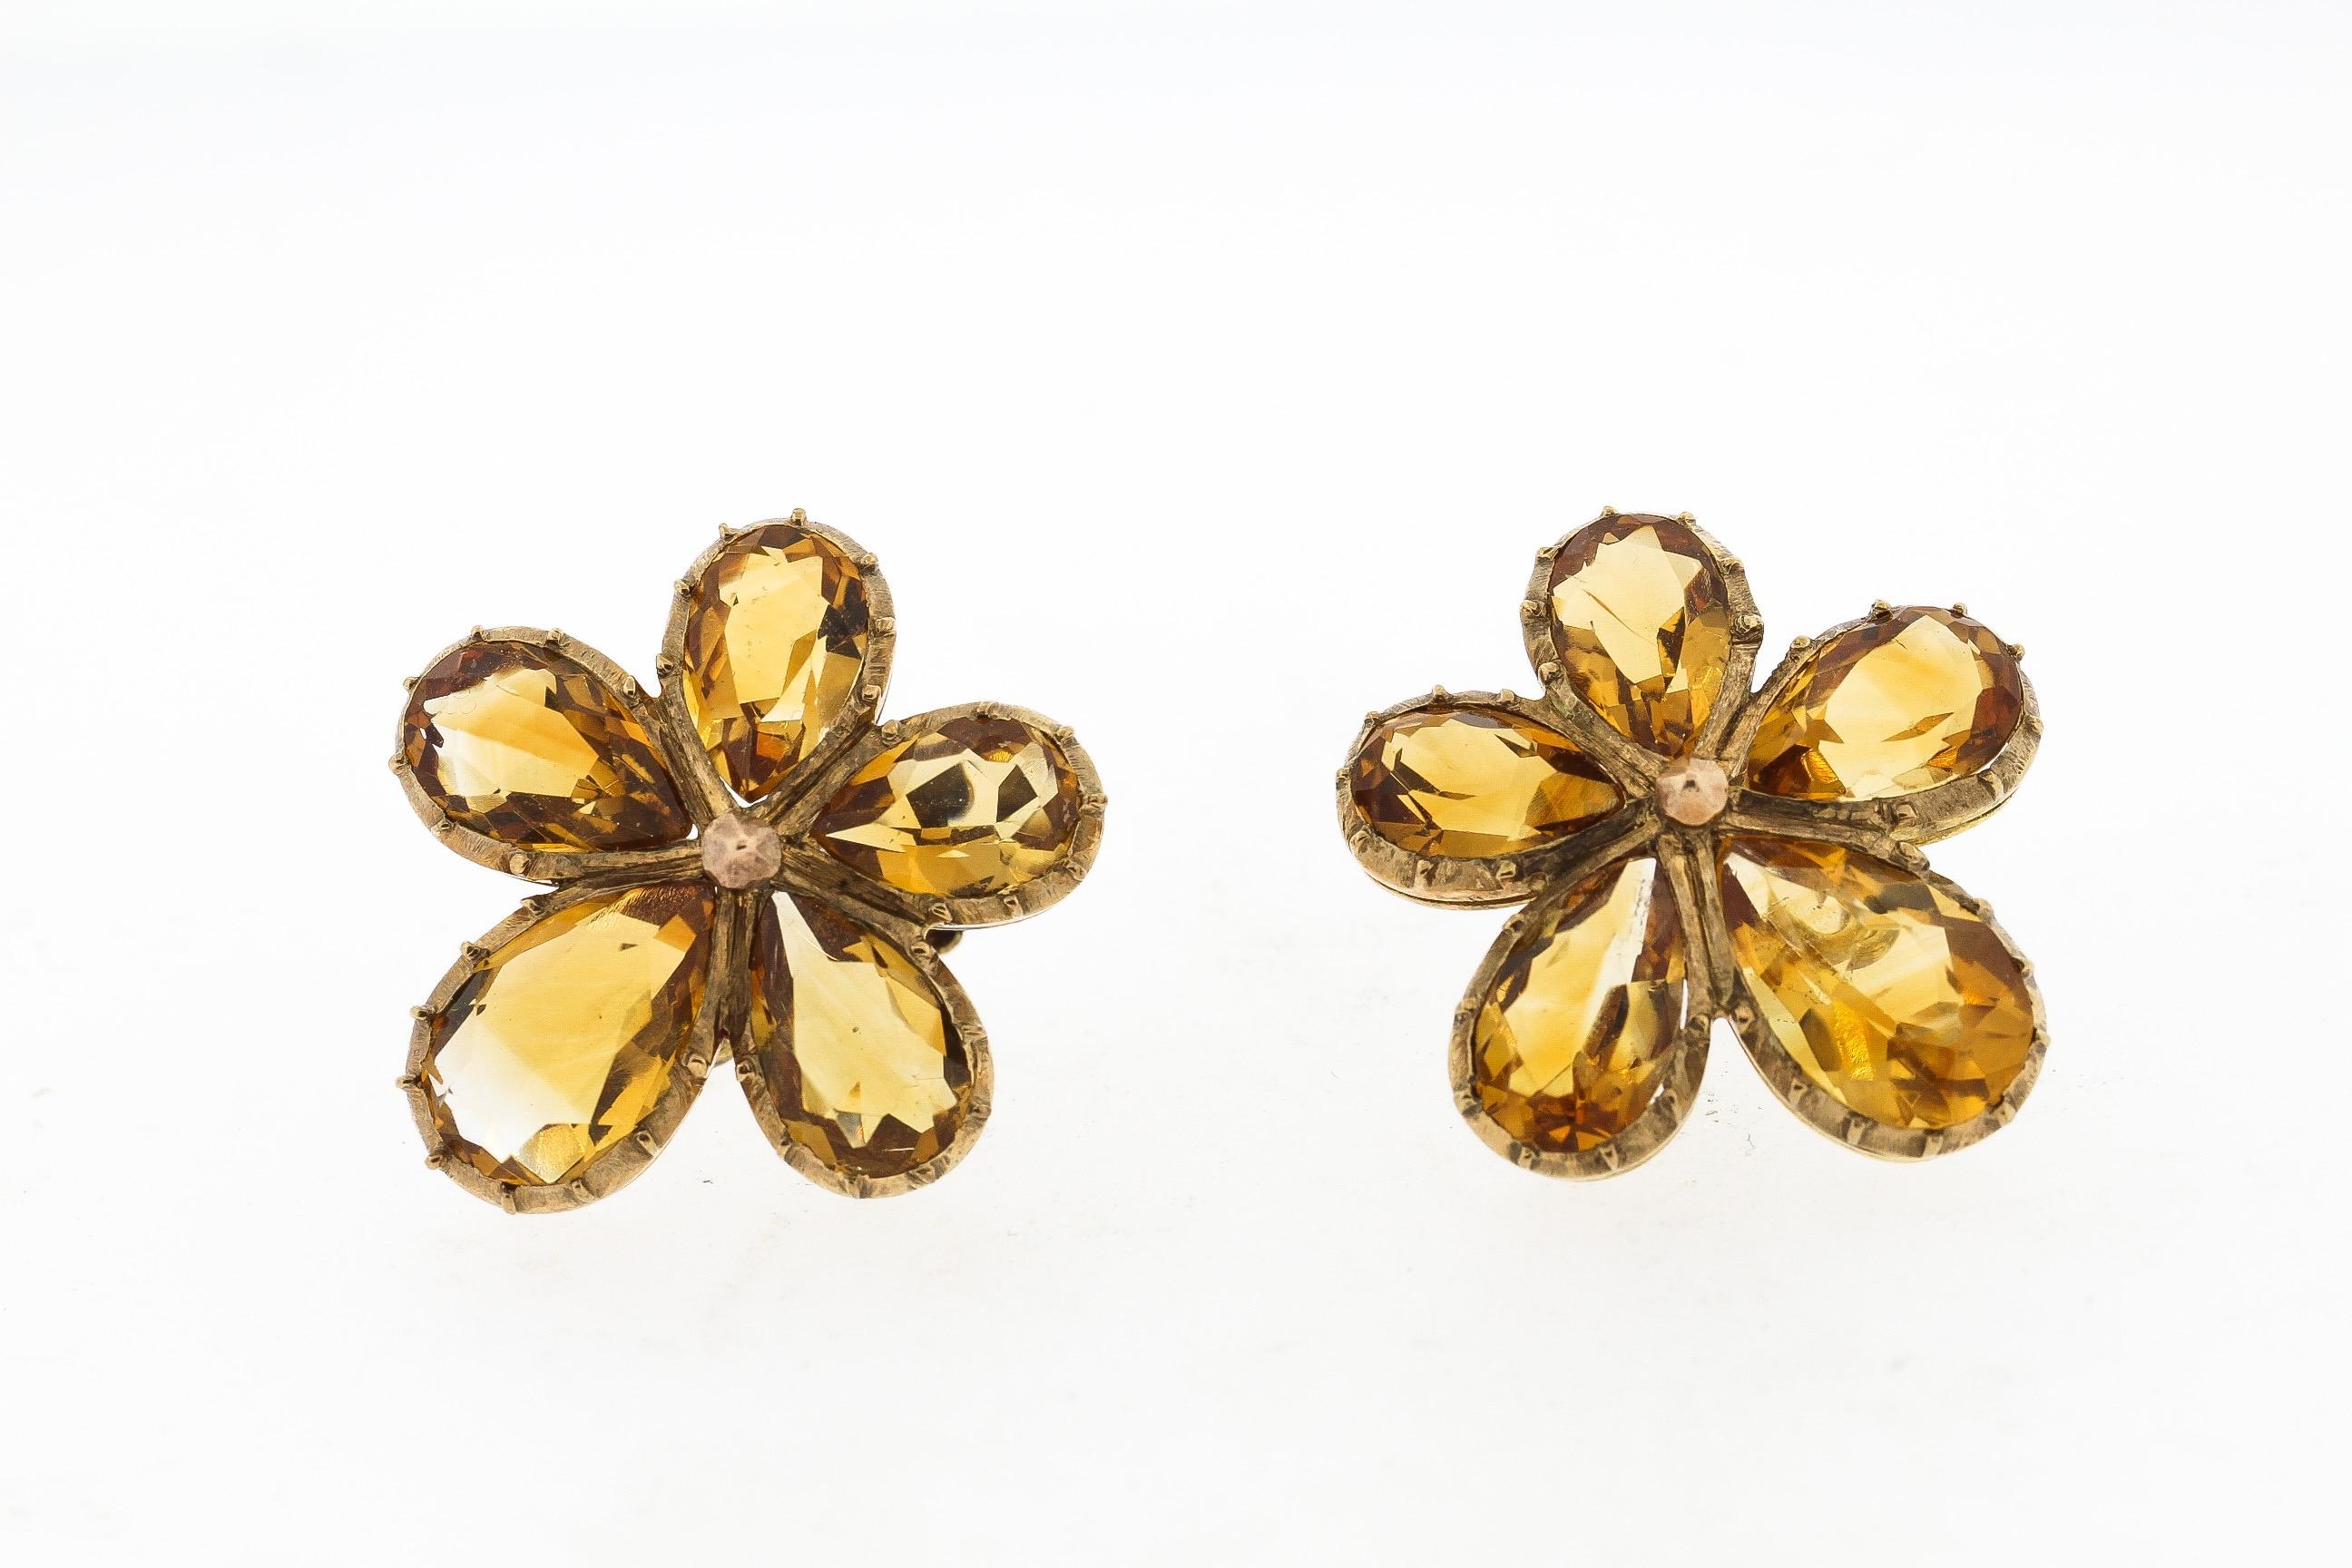 Antike Ohrringe aus 9k Gelbgold, besetzt mit 5 birnenförmigen Vitrinen, von denen zwei eine stiefmütterliche Blume bilden. Das Gelb des Citrins ist leuchtend. Die Rückseiten der Ohrringe sind mit 9k gestempelt und haben Schraubverschlüsse. Sie